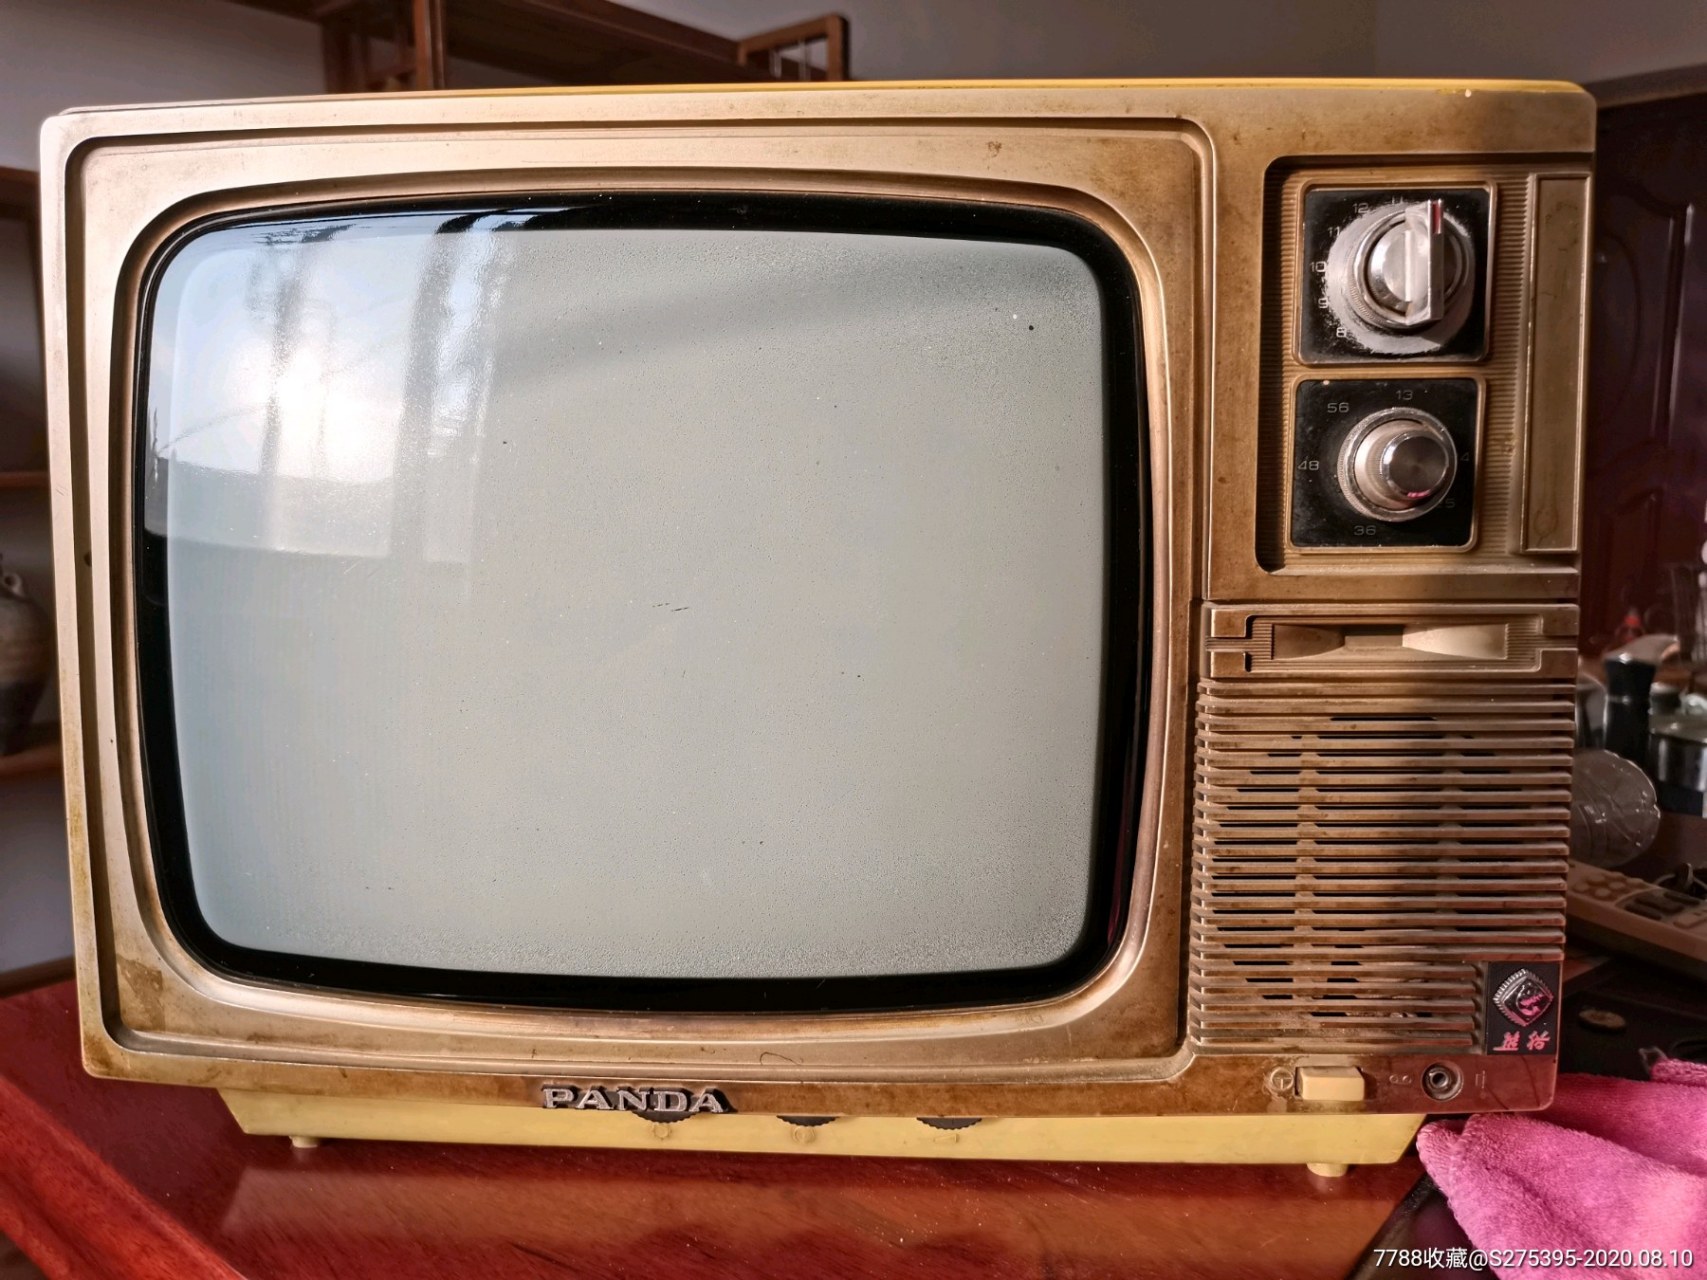 我记得1990年的时候,那时候我还很小,我家是全村第一个买电视机的,那